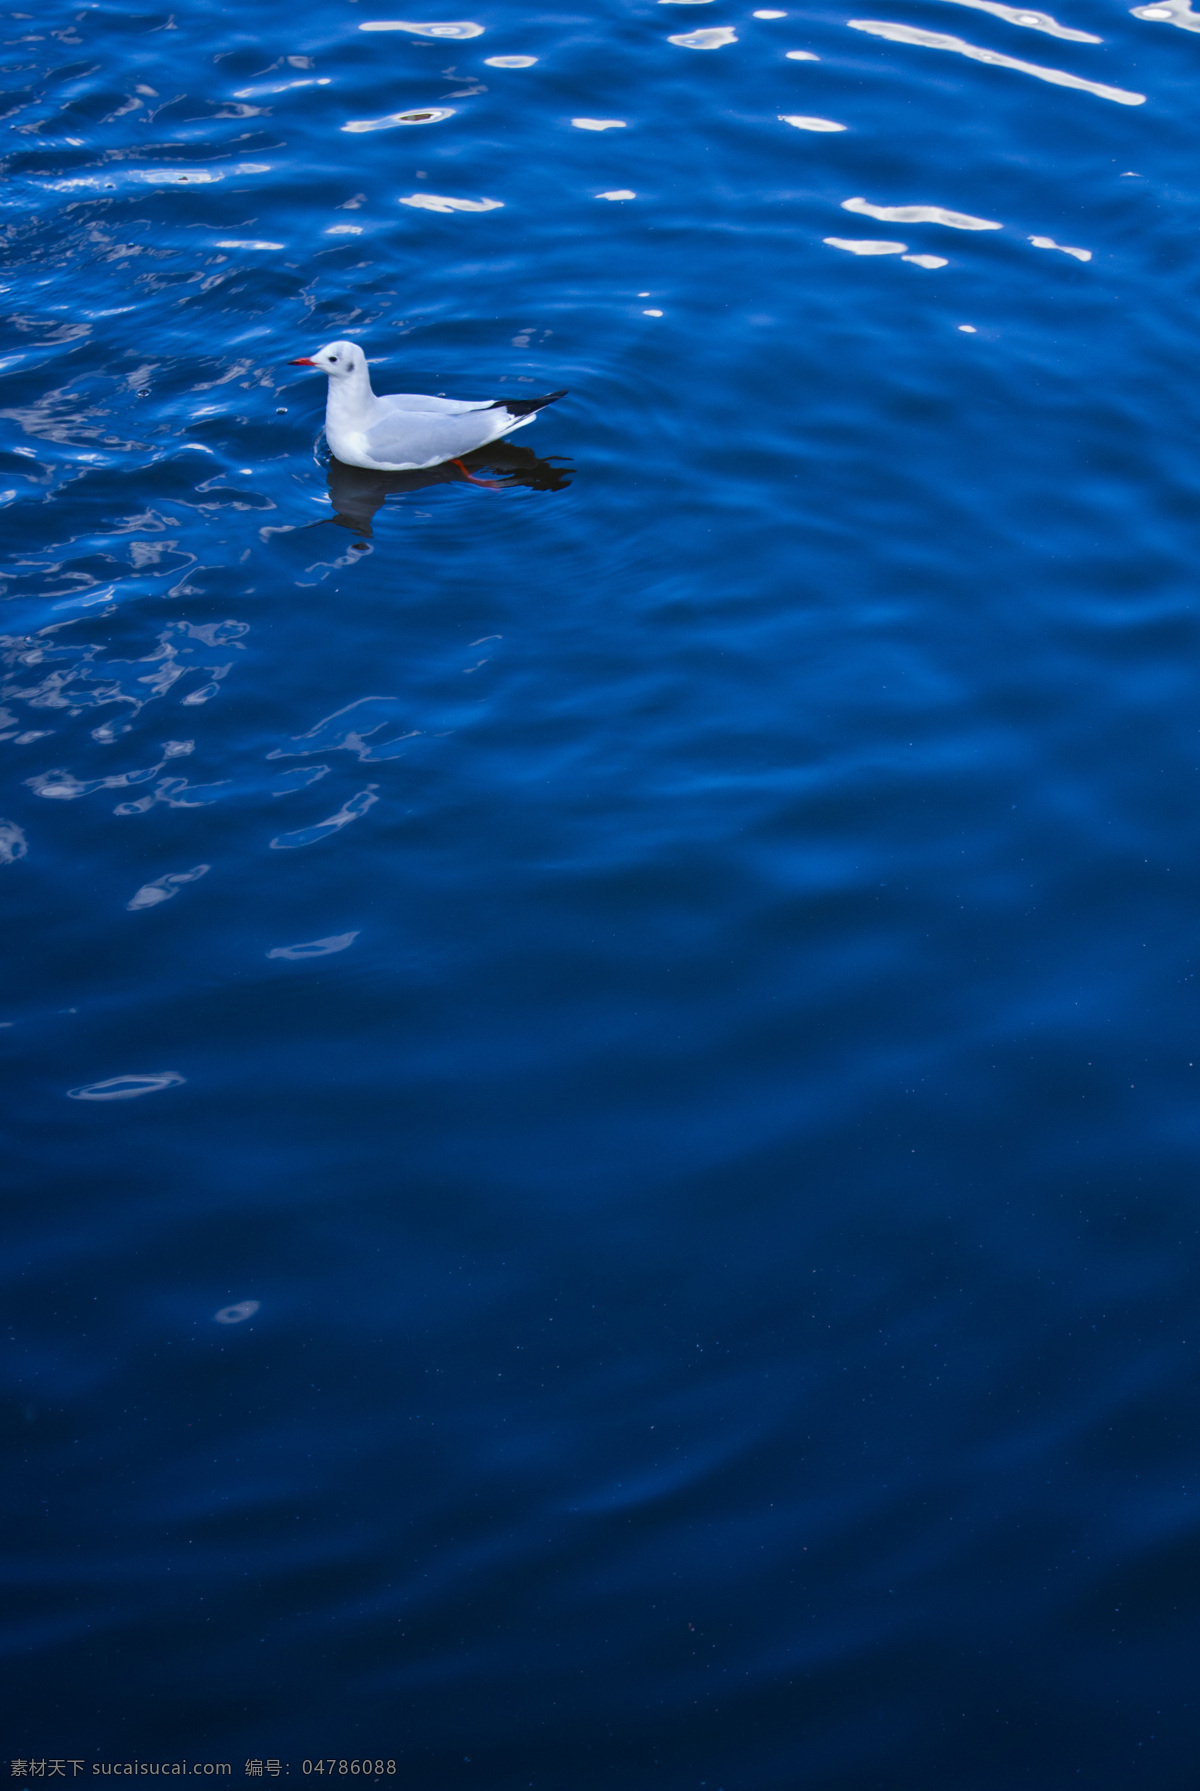 蓝色系列 小鸟 水鸟 海鸥 红嘴鸥 游水 湖水 蓝色水面 漂浮 涟漪 波纹 鸟类 生物世界